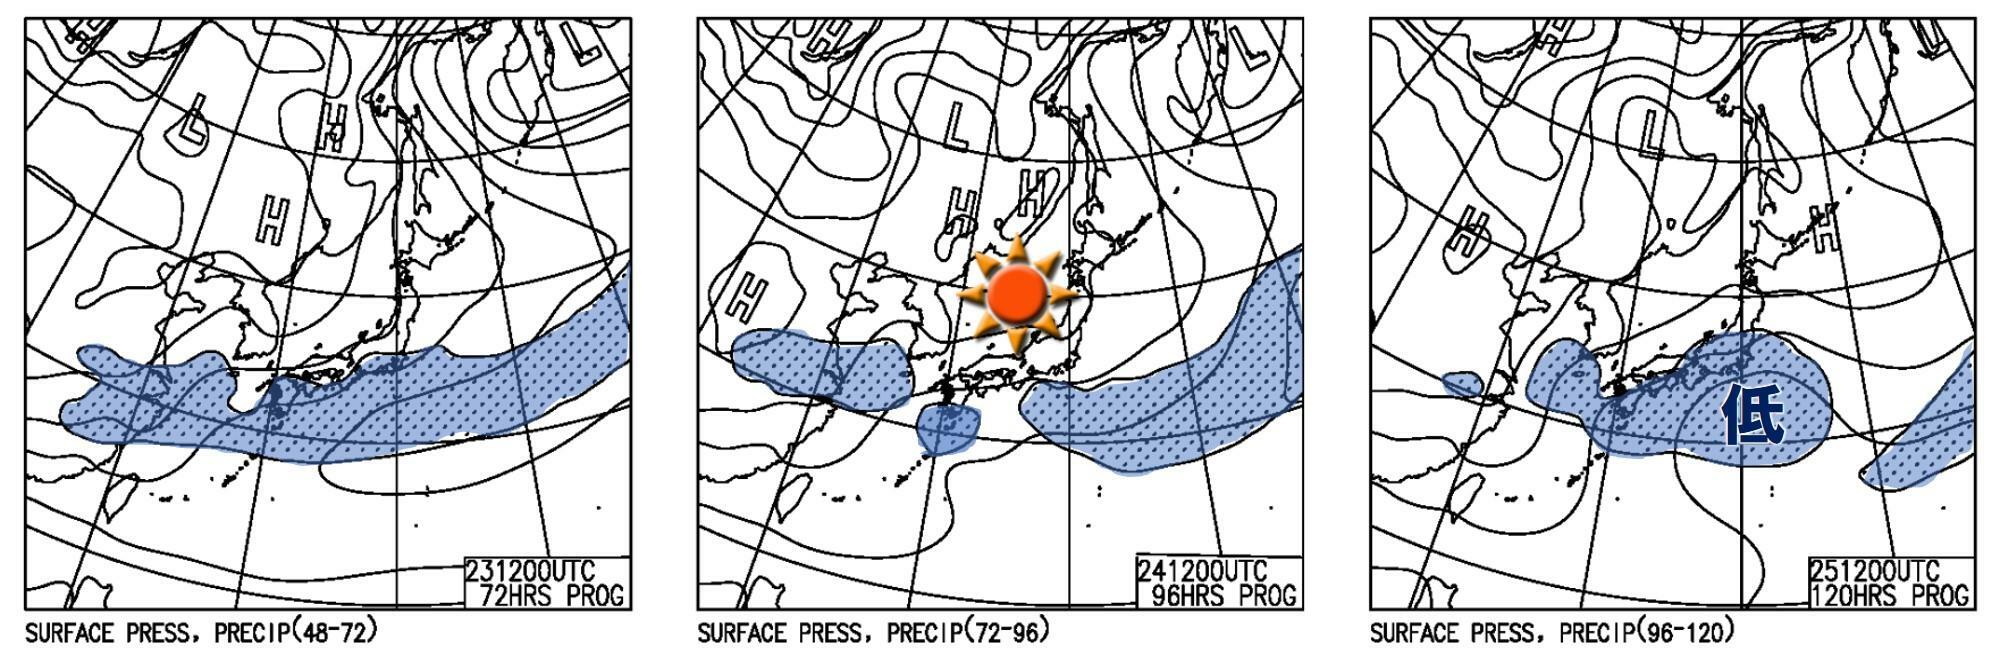 連休中日の24日は前線や低気圧の切れ間に日本列島が入る